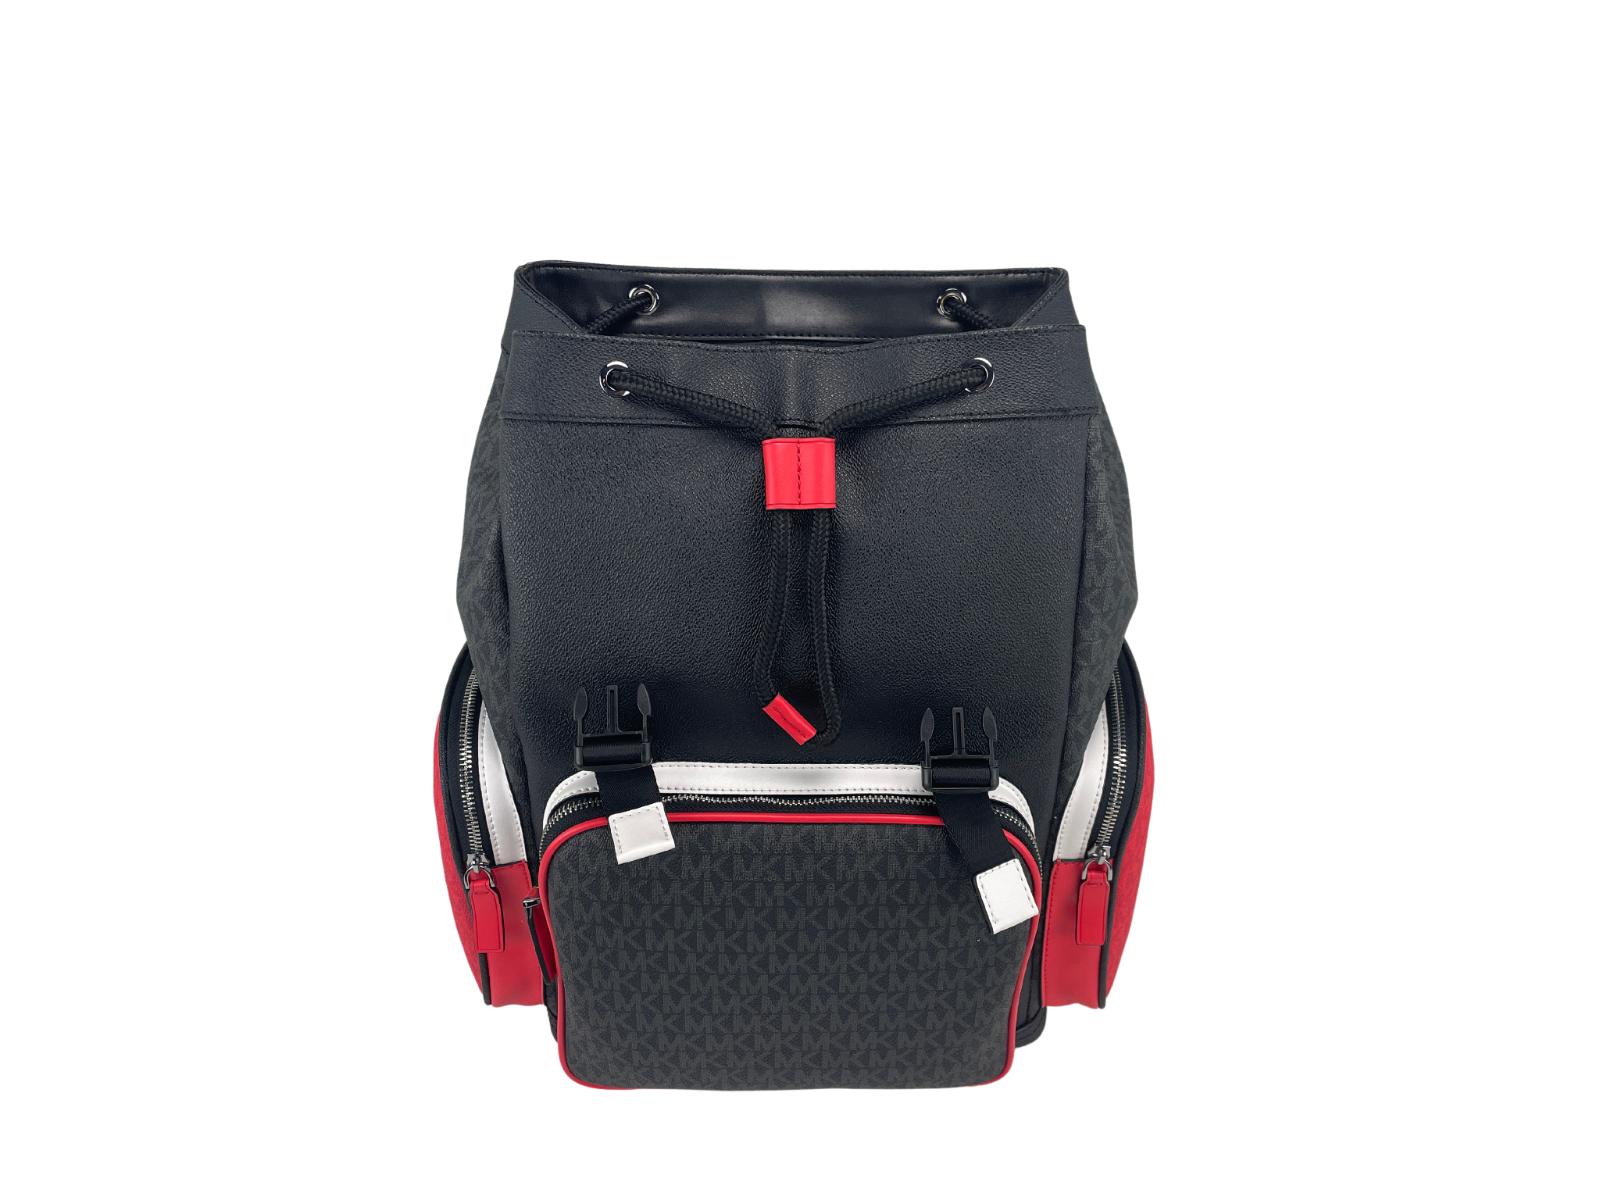 Michael Kors Cooper Signature Utility Large Rucksack Backpack Bag